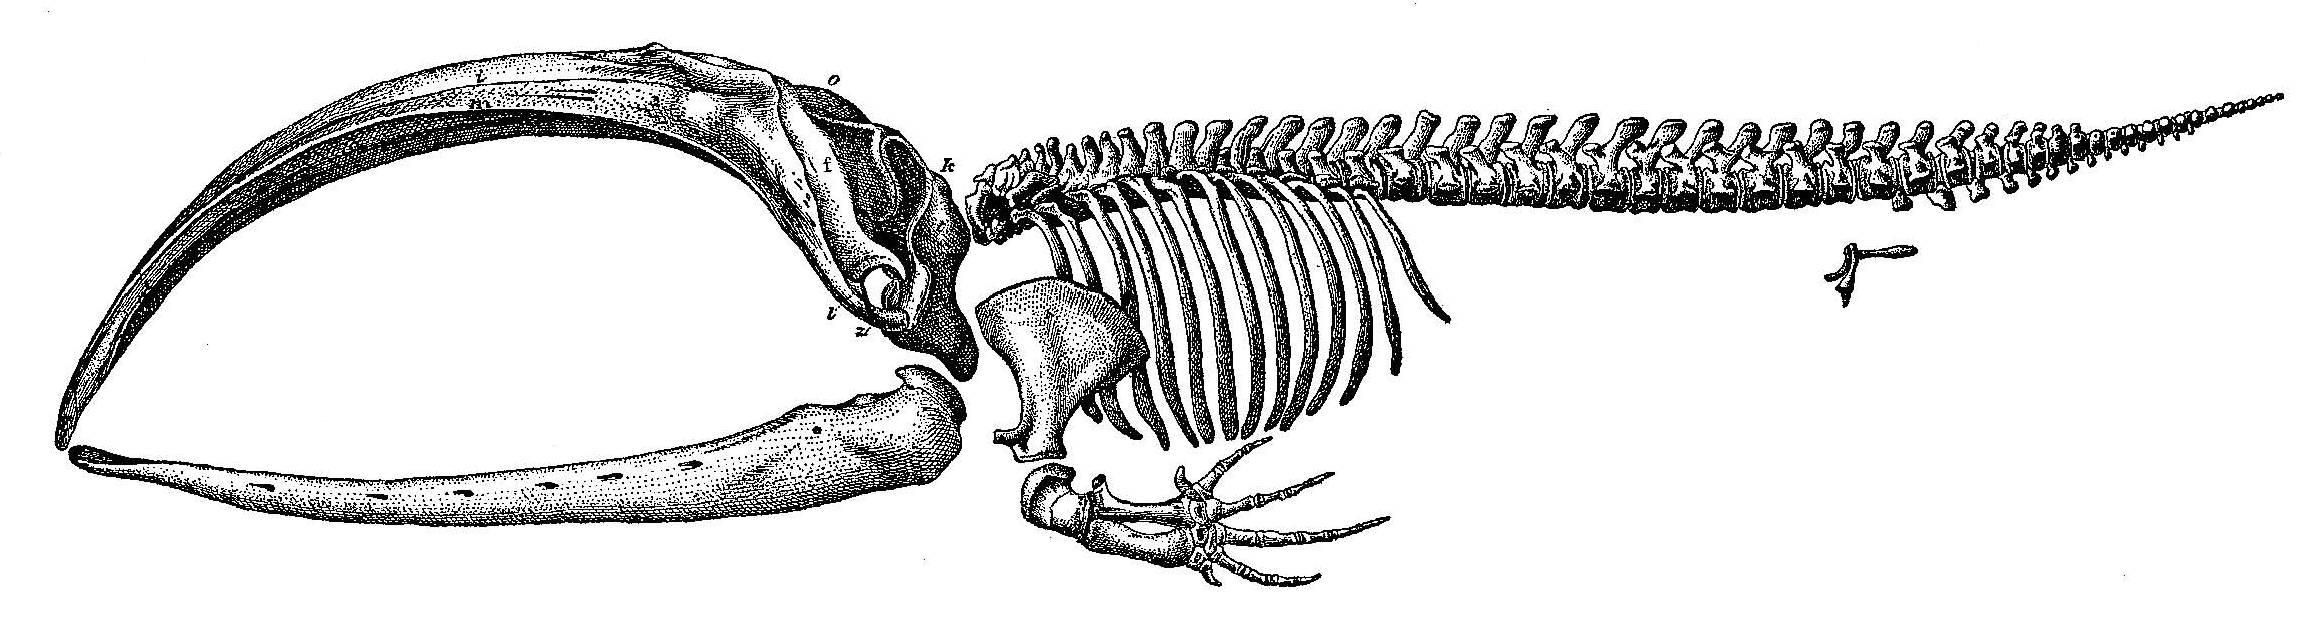 Scammon - Skeleton of a Balaena Mysticetus.